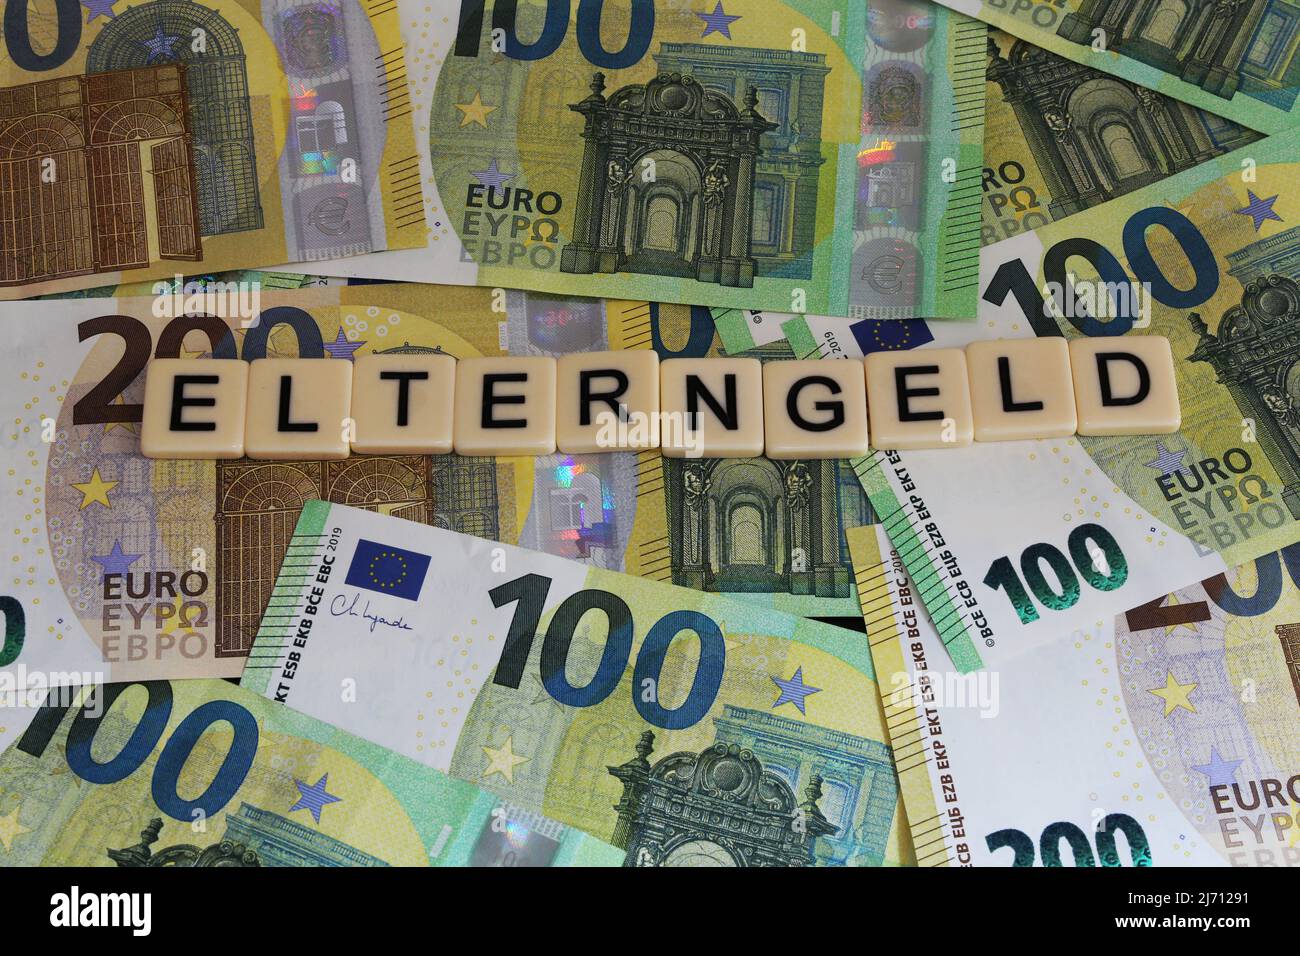 Symbolbild Elterngeld: Buchstaben auf Euroscheinen zeigen das Wort Elterngeld an Stock Photo